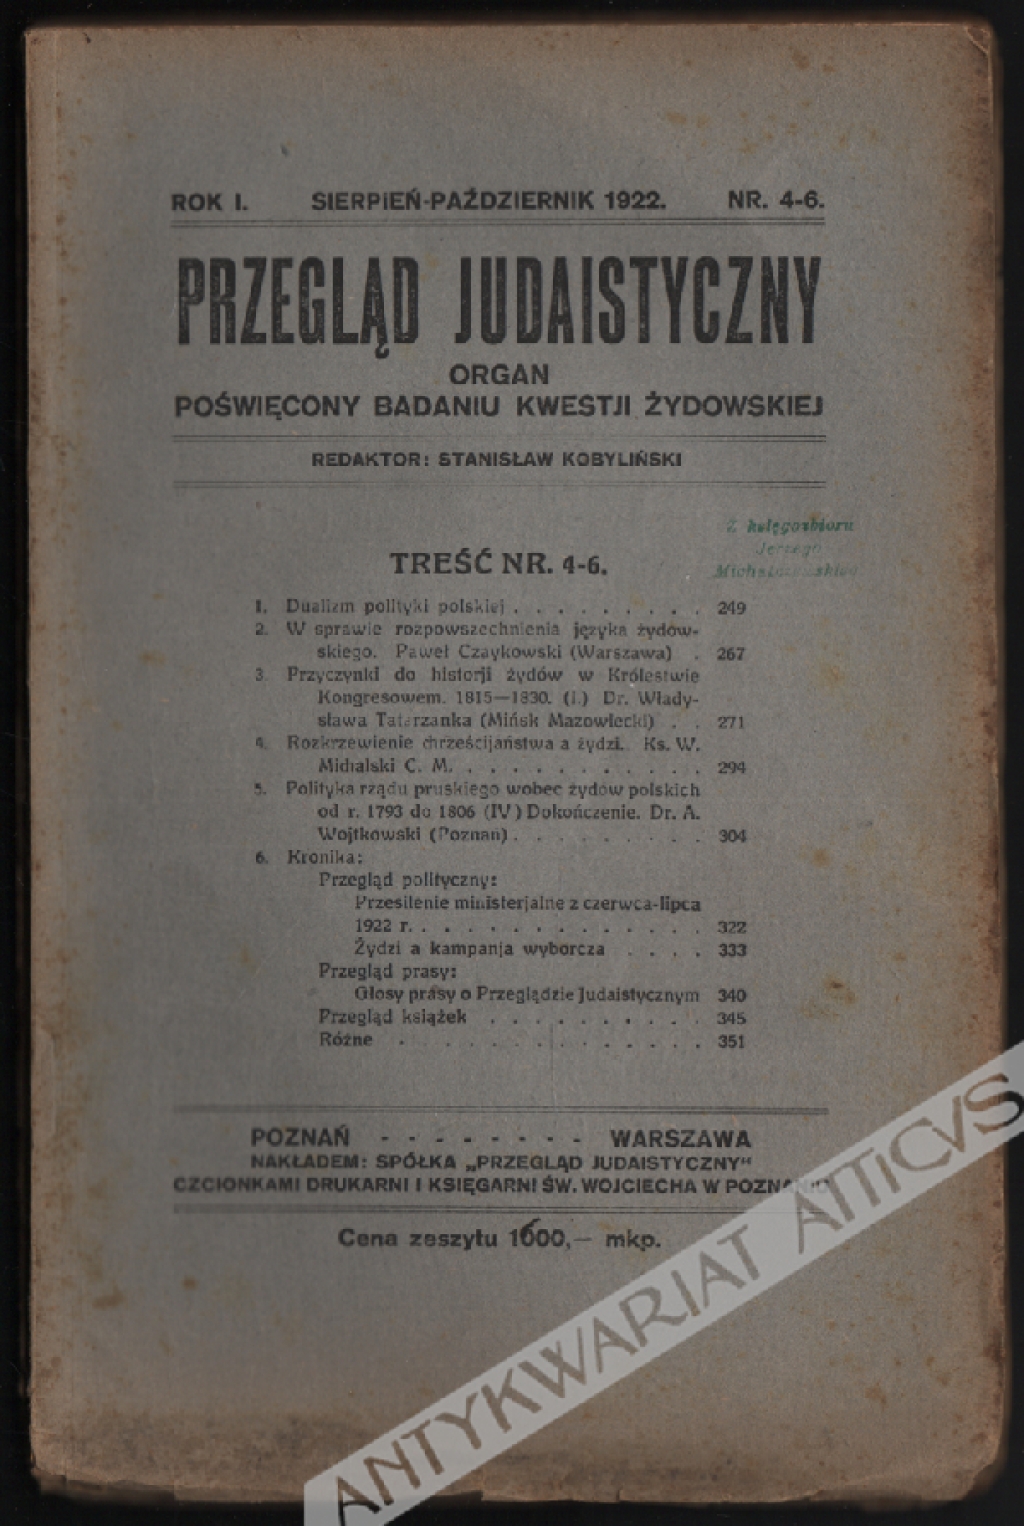 Przegląd Judaistyczny. Organ poświęcony badaniu kwestji żydowskiej. Rok I, nr 4-6 - sierpień-październik 1922